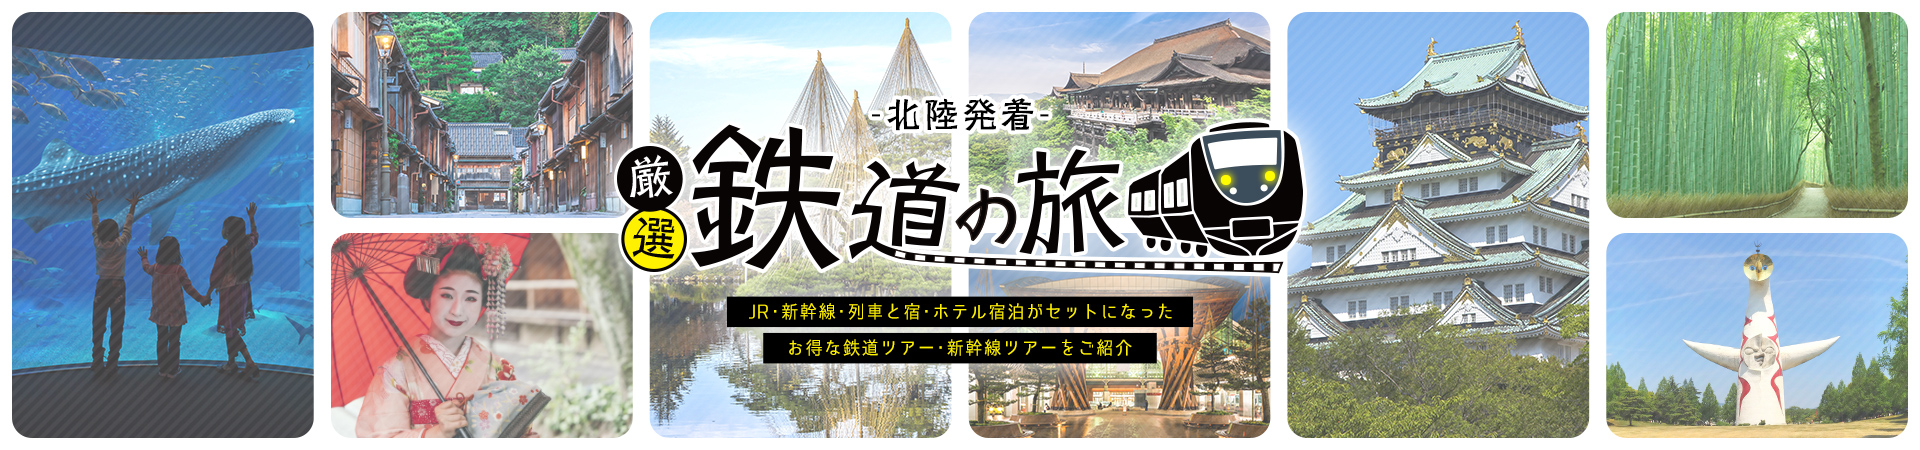 新幹線・鉄道で行く国内旅行・ツアー格安予約